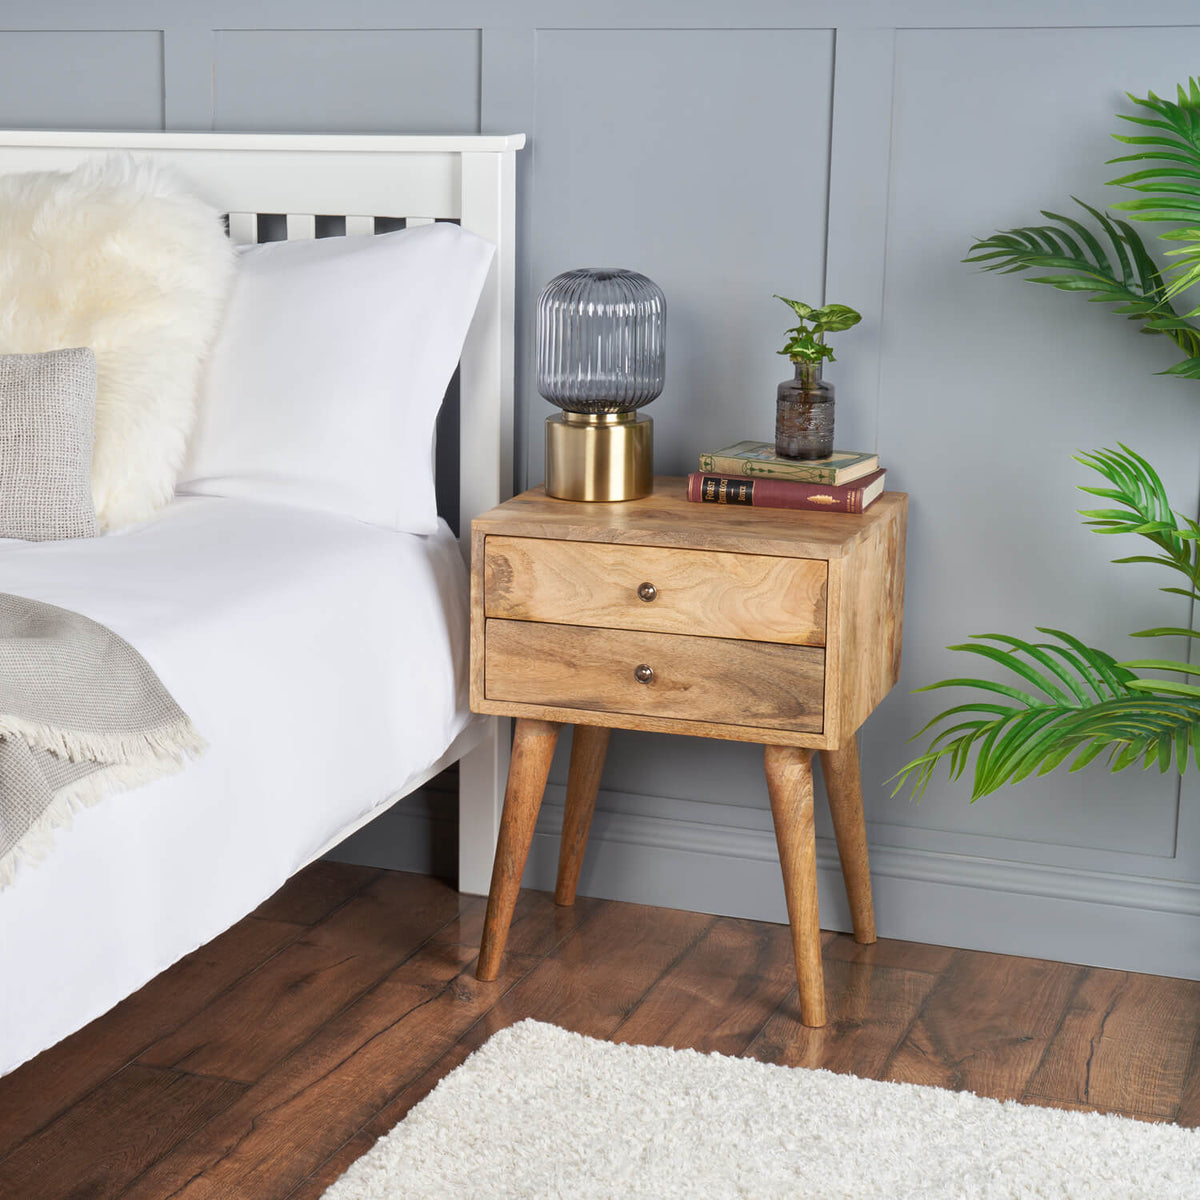 Buy Solid Wood Bedside Table on sale wood bedside table for main bedroom master bedroom rustic bedside cabinets uk